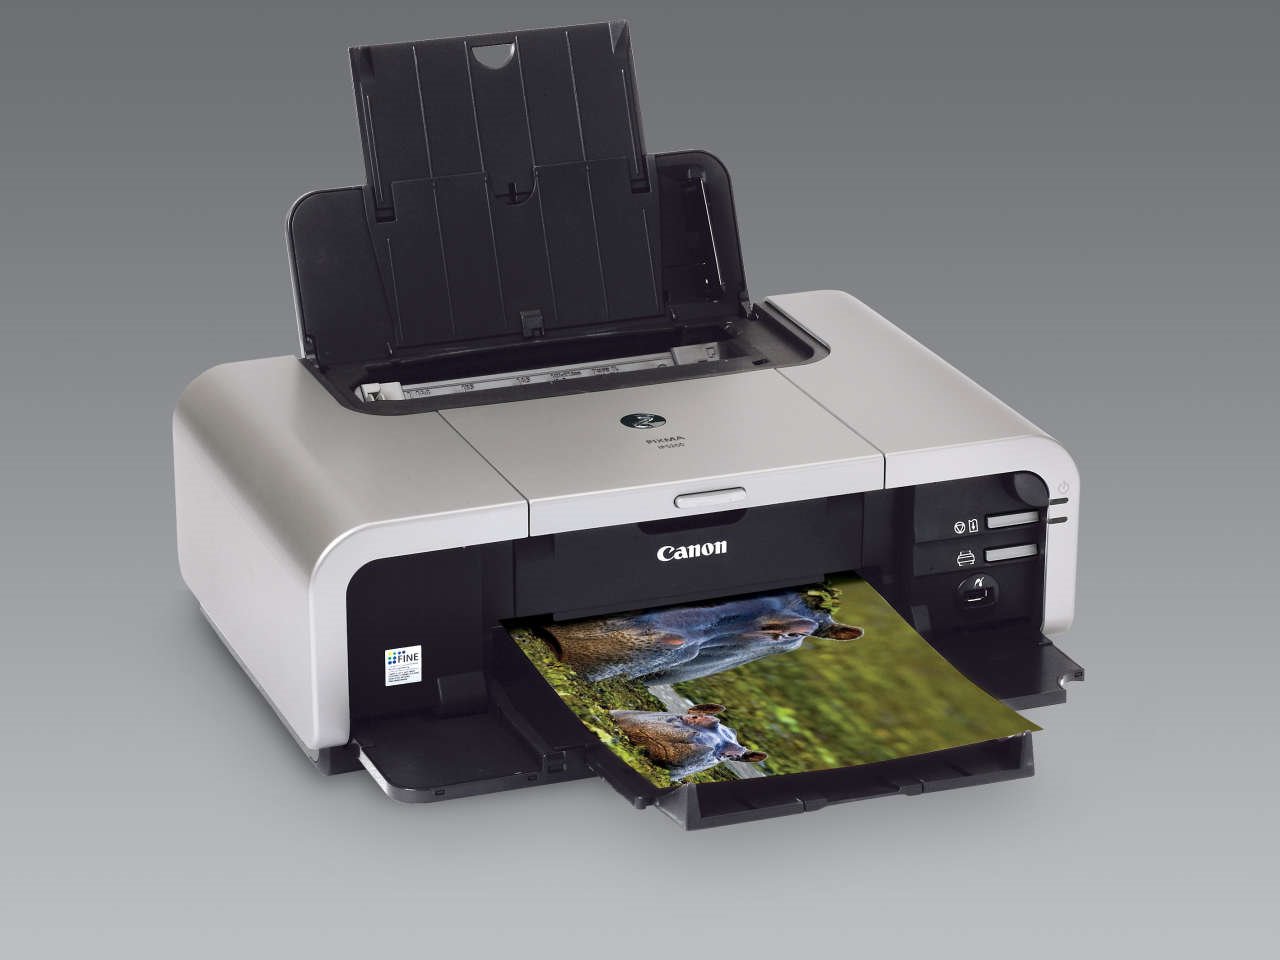 canon mp490 printer wireless